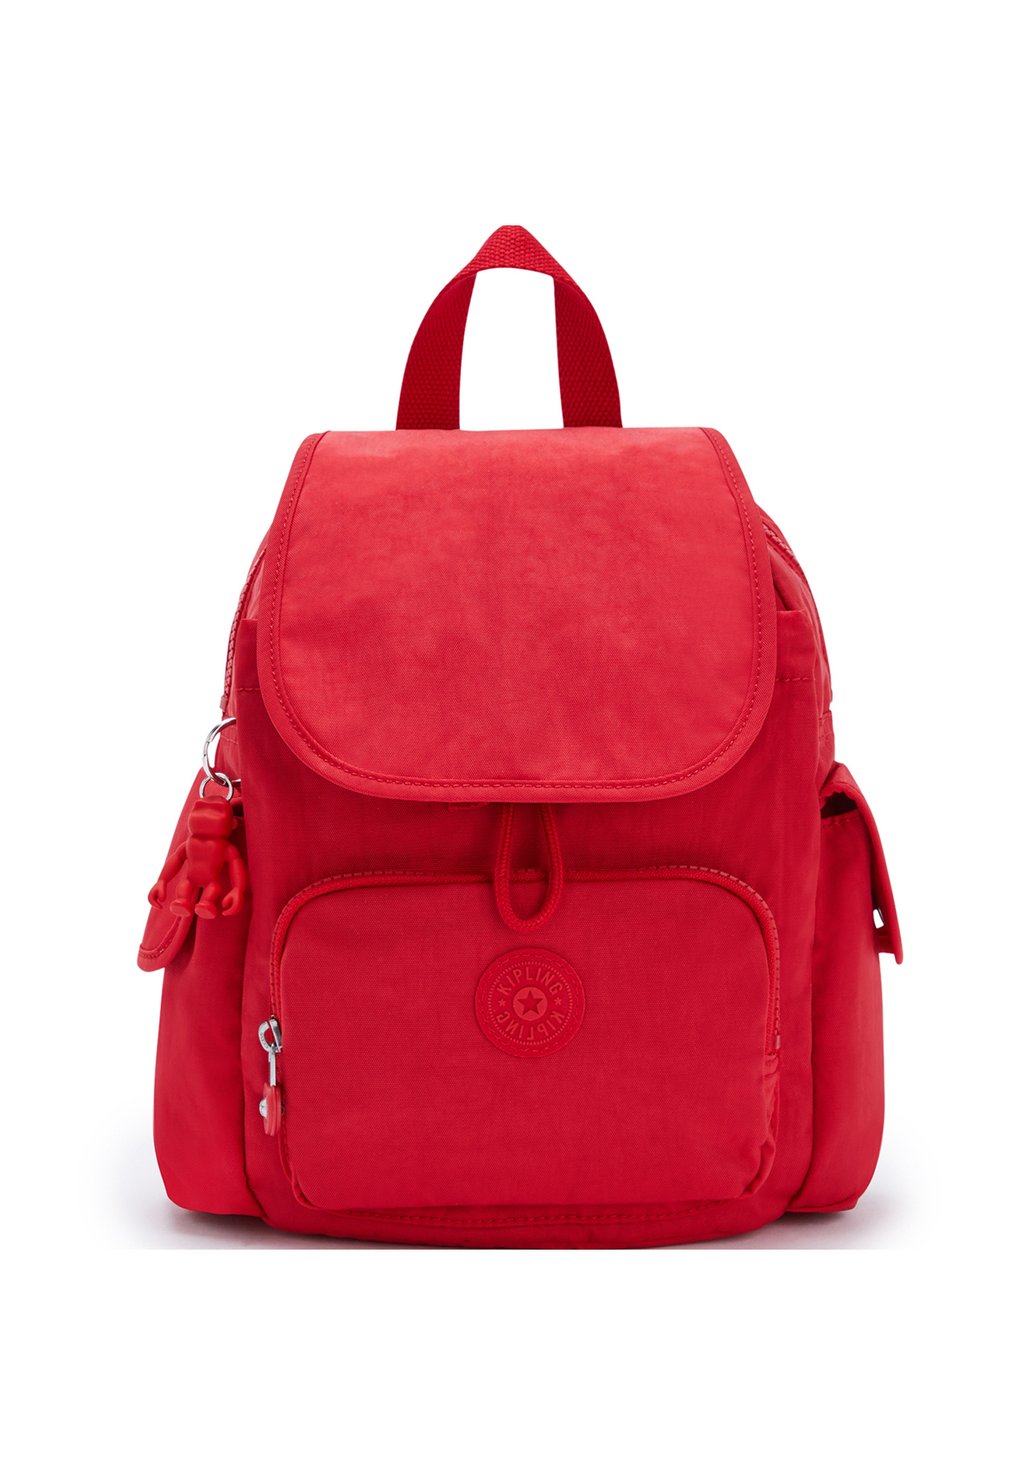 Рюкзак CITY PACK MINI Kipling, цвет red rouge